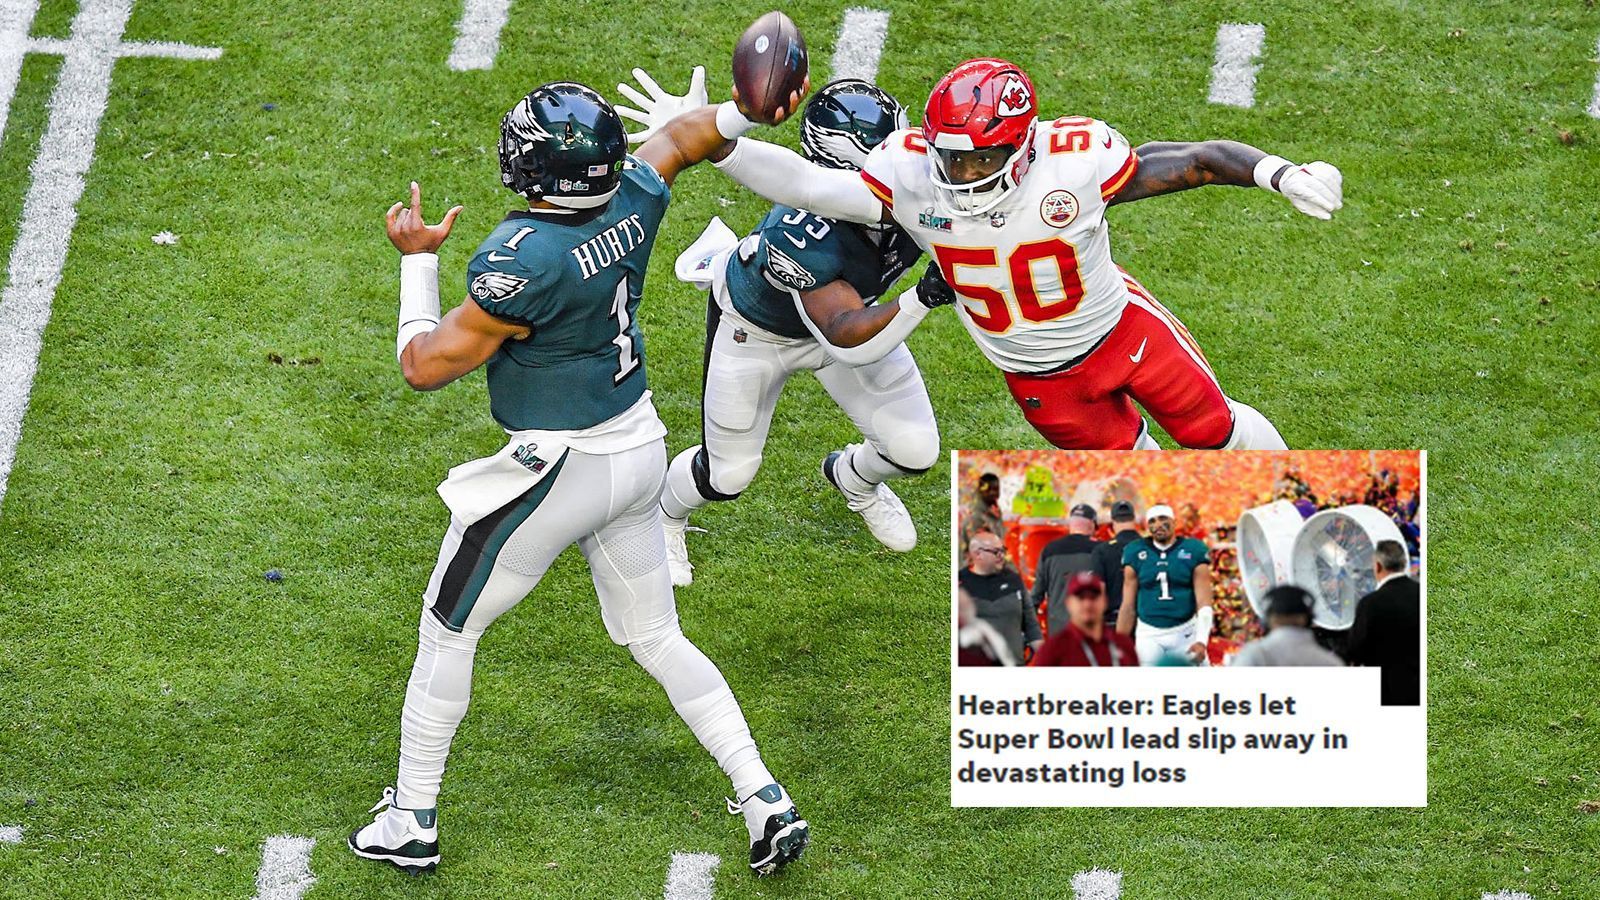 
                <strong>The News Journal (USA)</strong><br>
                "Herzzerreißend: Eagles verspielen Super-Bowl-Führung bei fataler Niederlage."
              